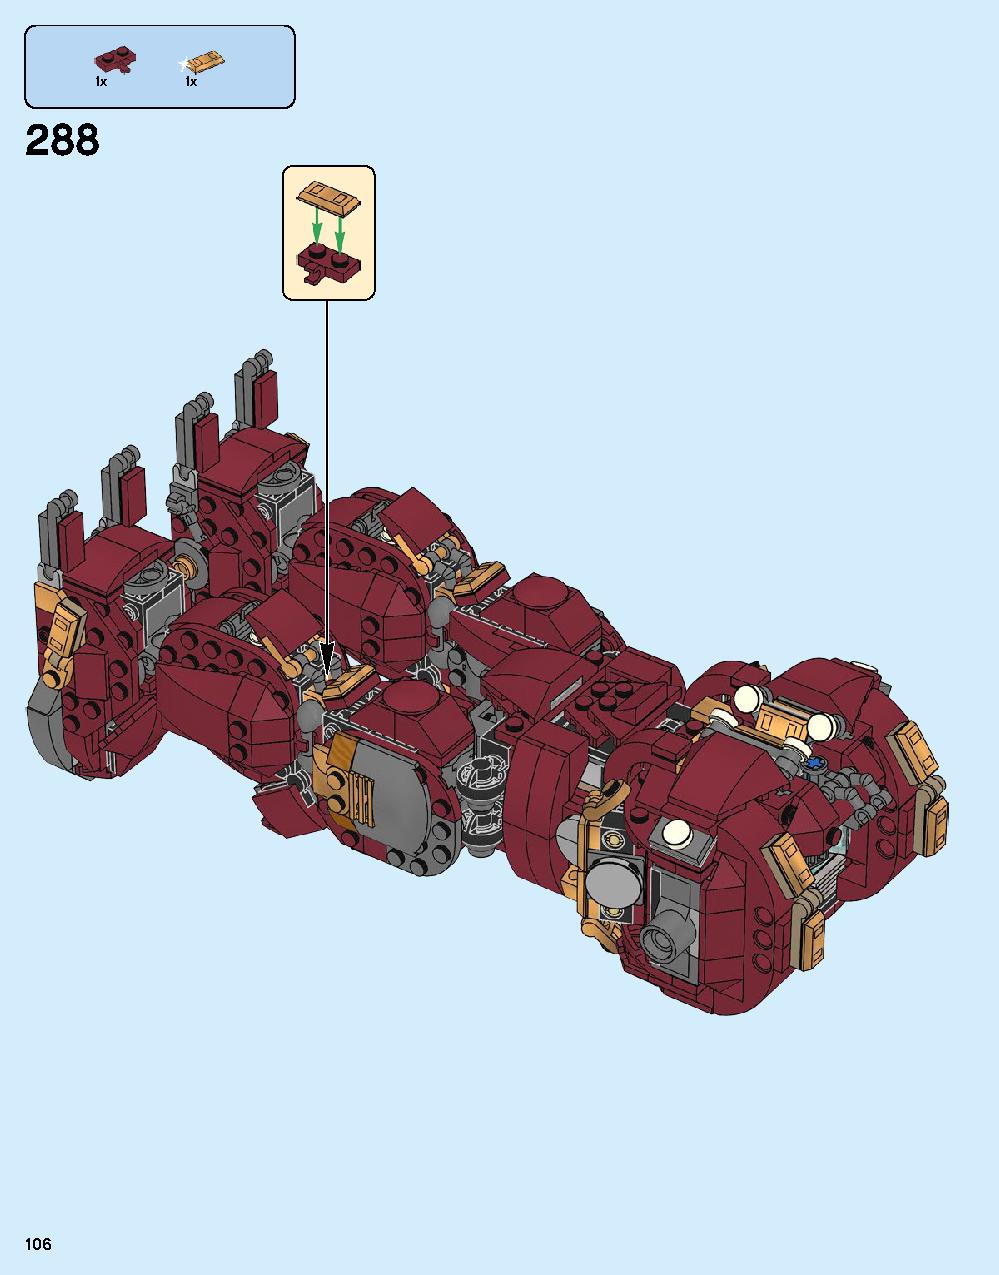 ハルクバスター：ウルトロン・エディション 76105 レゴの商品情報 レゴの説明書・組立方法 106 page